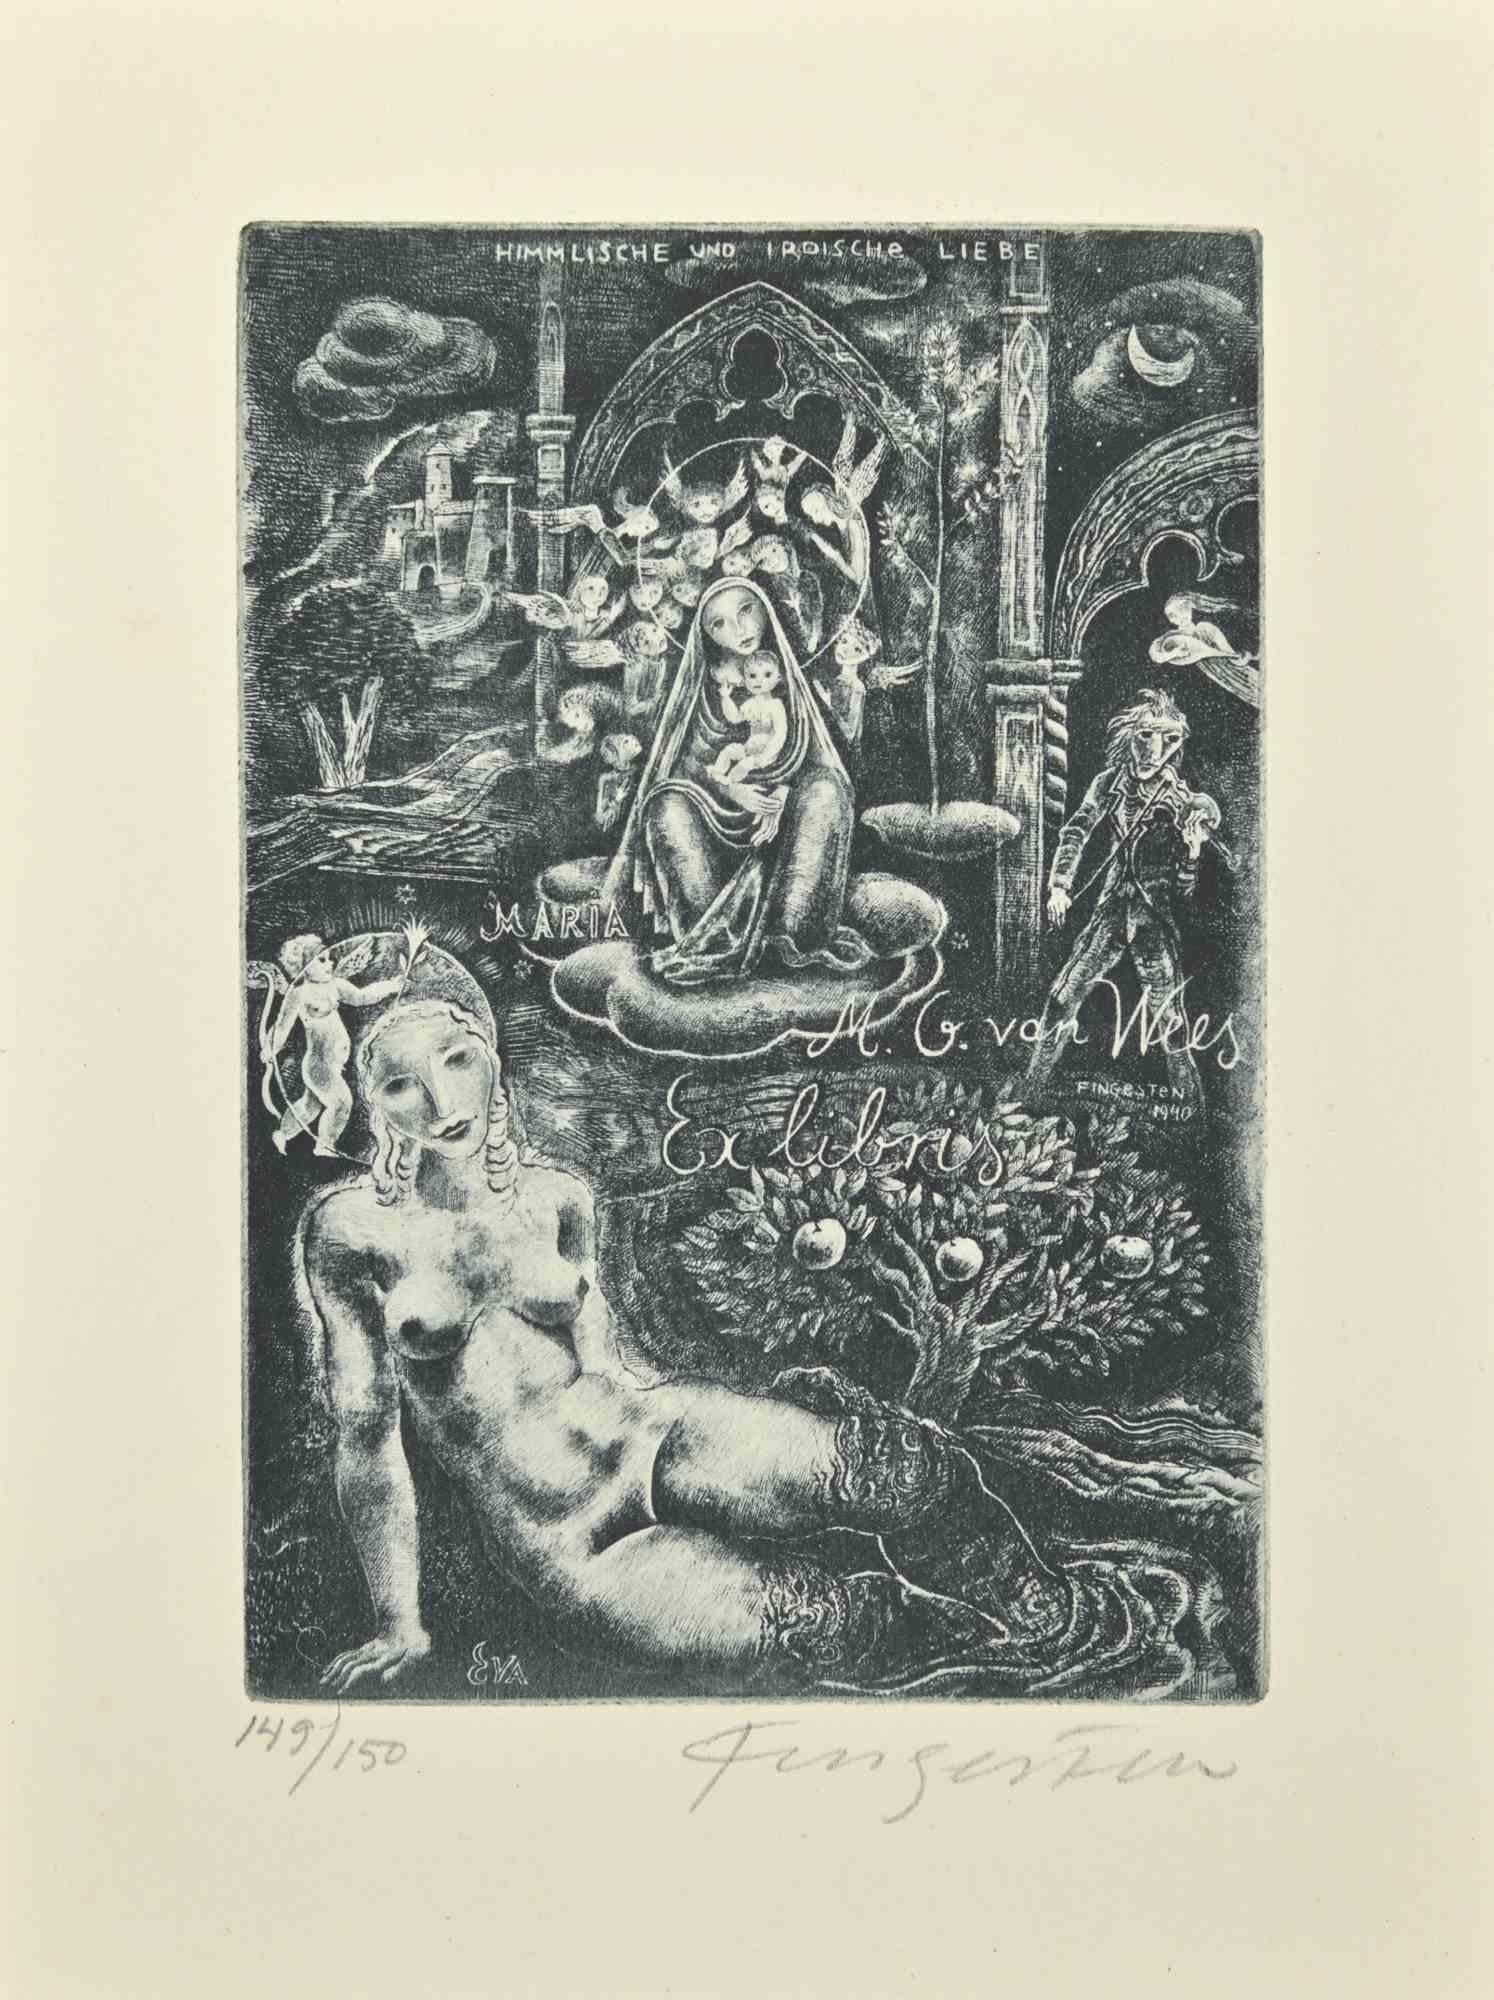 Ex Libris - M. I. Van Wees est une gravure à l'eau-forte créée par  Michel Fingesten en 1940.

Signé à la main dans la marge inférieure. Numéroté dans le coin gauche, ex. 149/150

Bonnes conditions.

Michel Fingesten (1884 - 1943) était un peintre